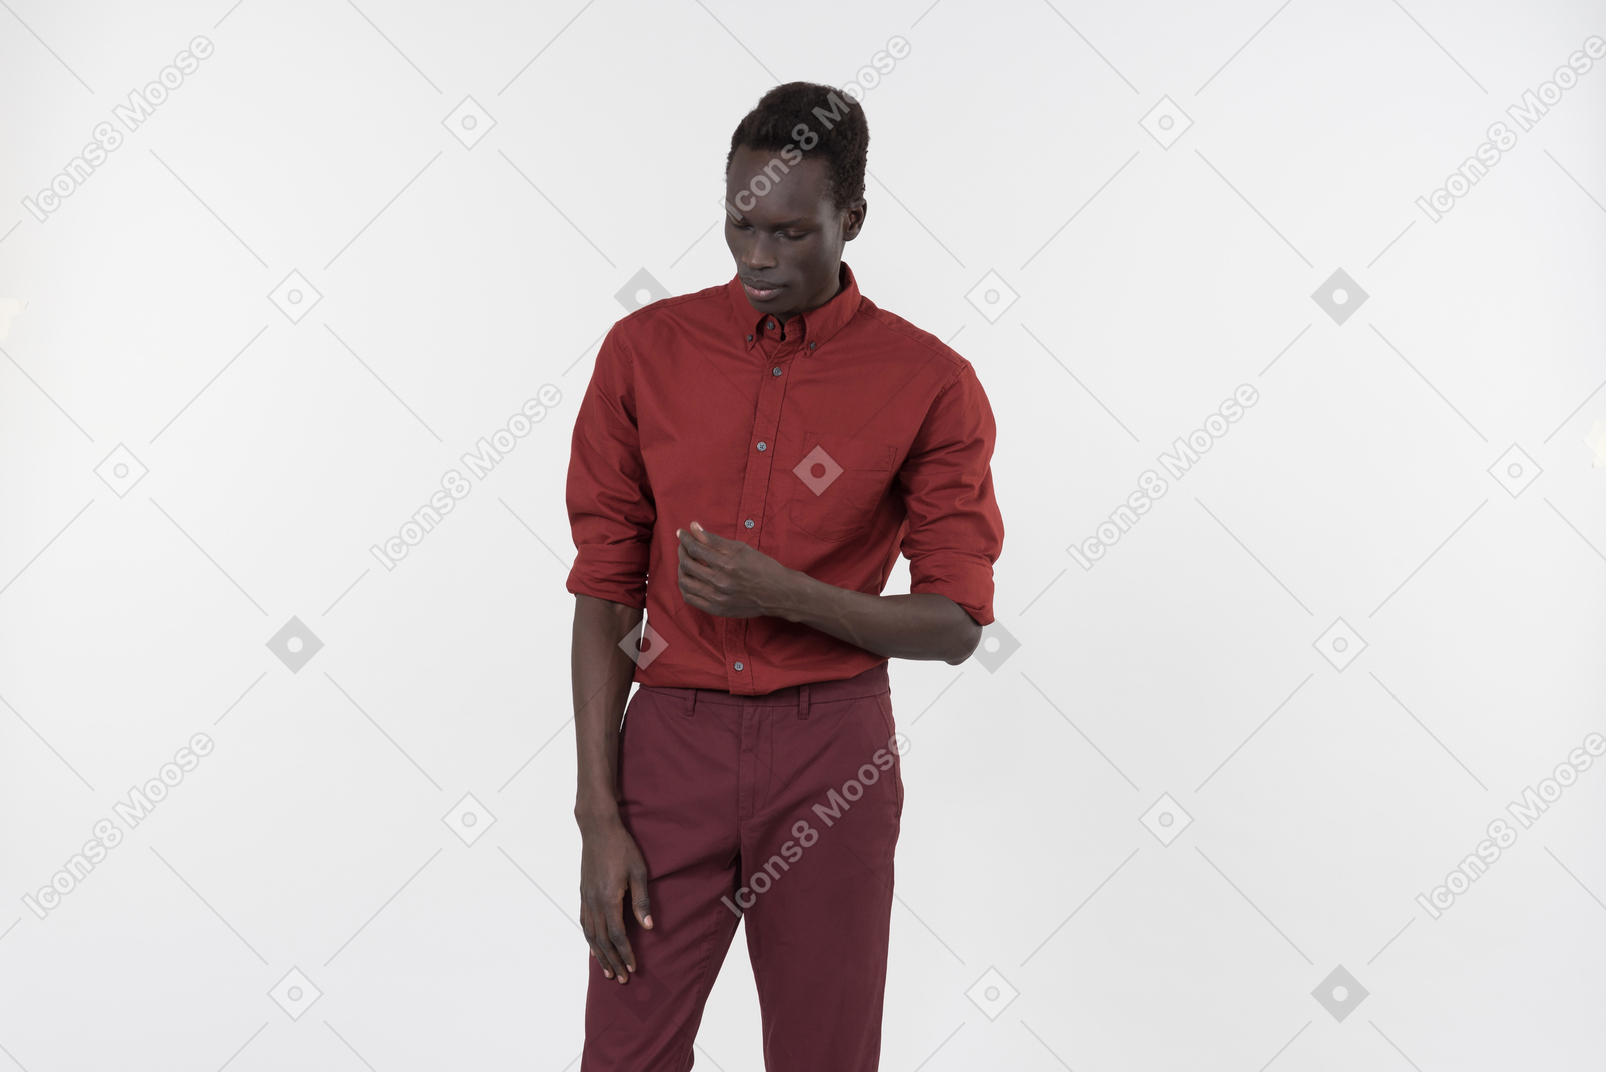 Темнокожий мужчина в красной рубашке с закатанными рукавами и темно-красными брюками стоит один на белом фоне